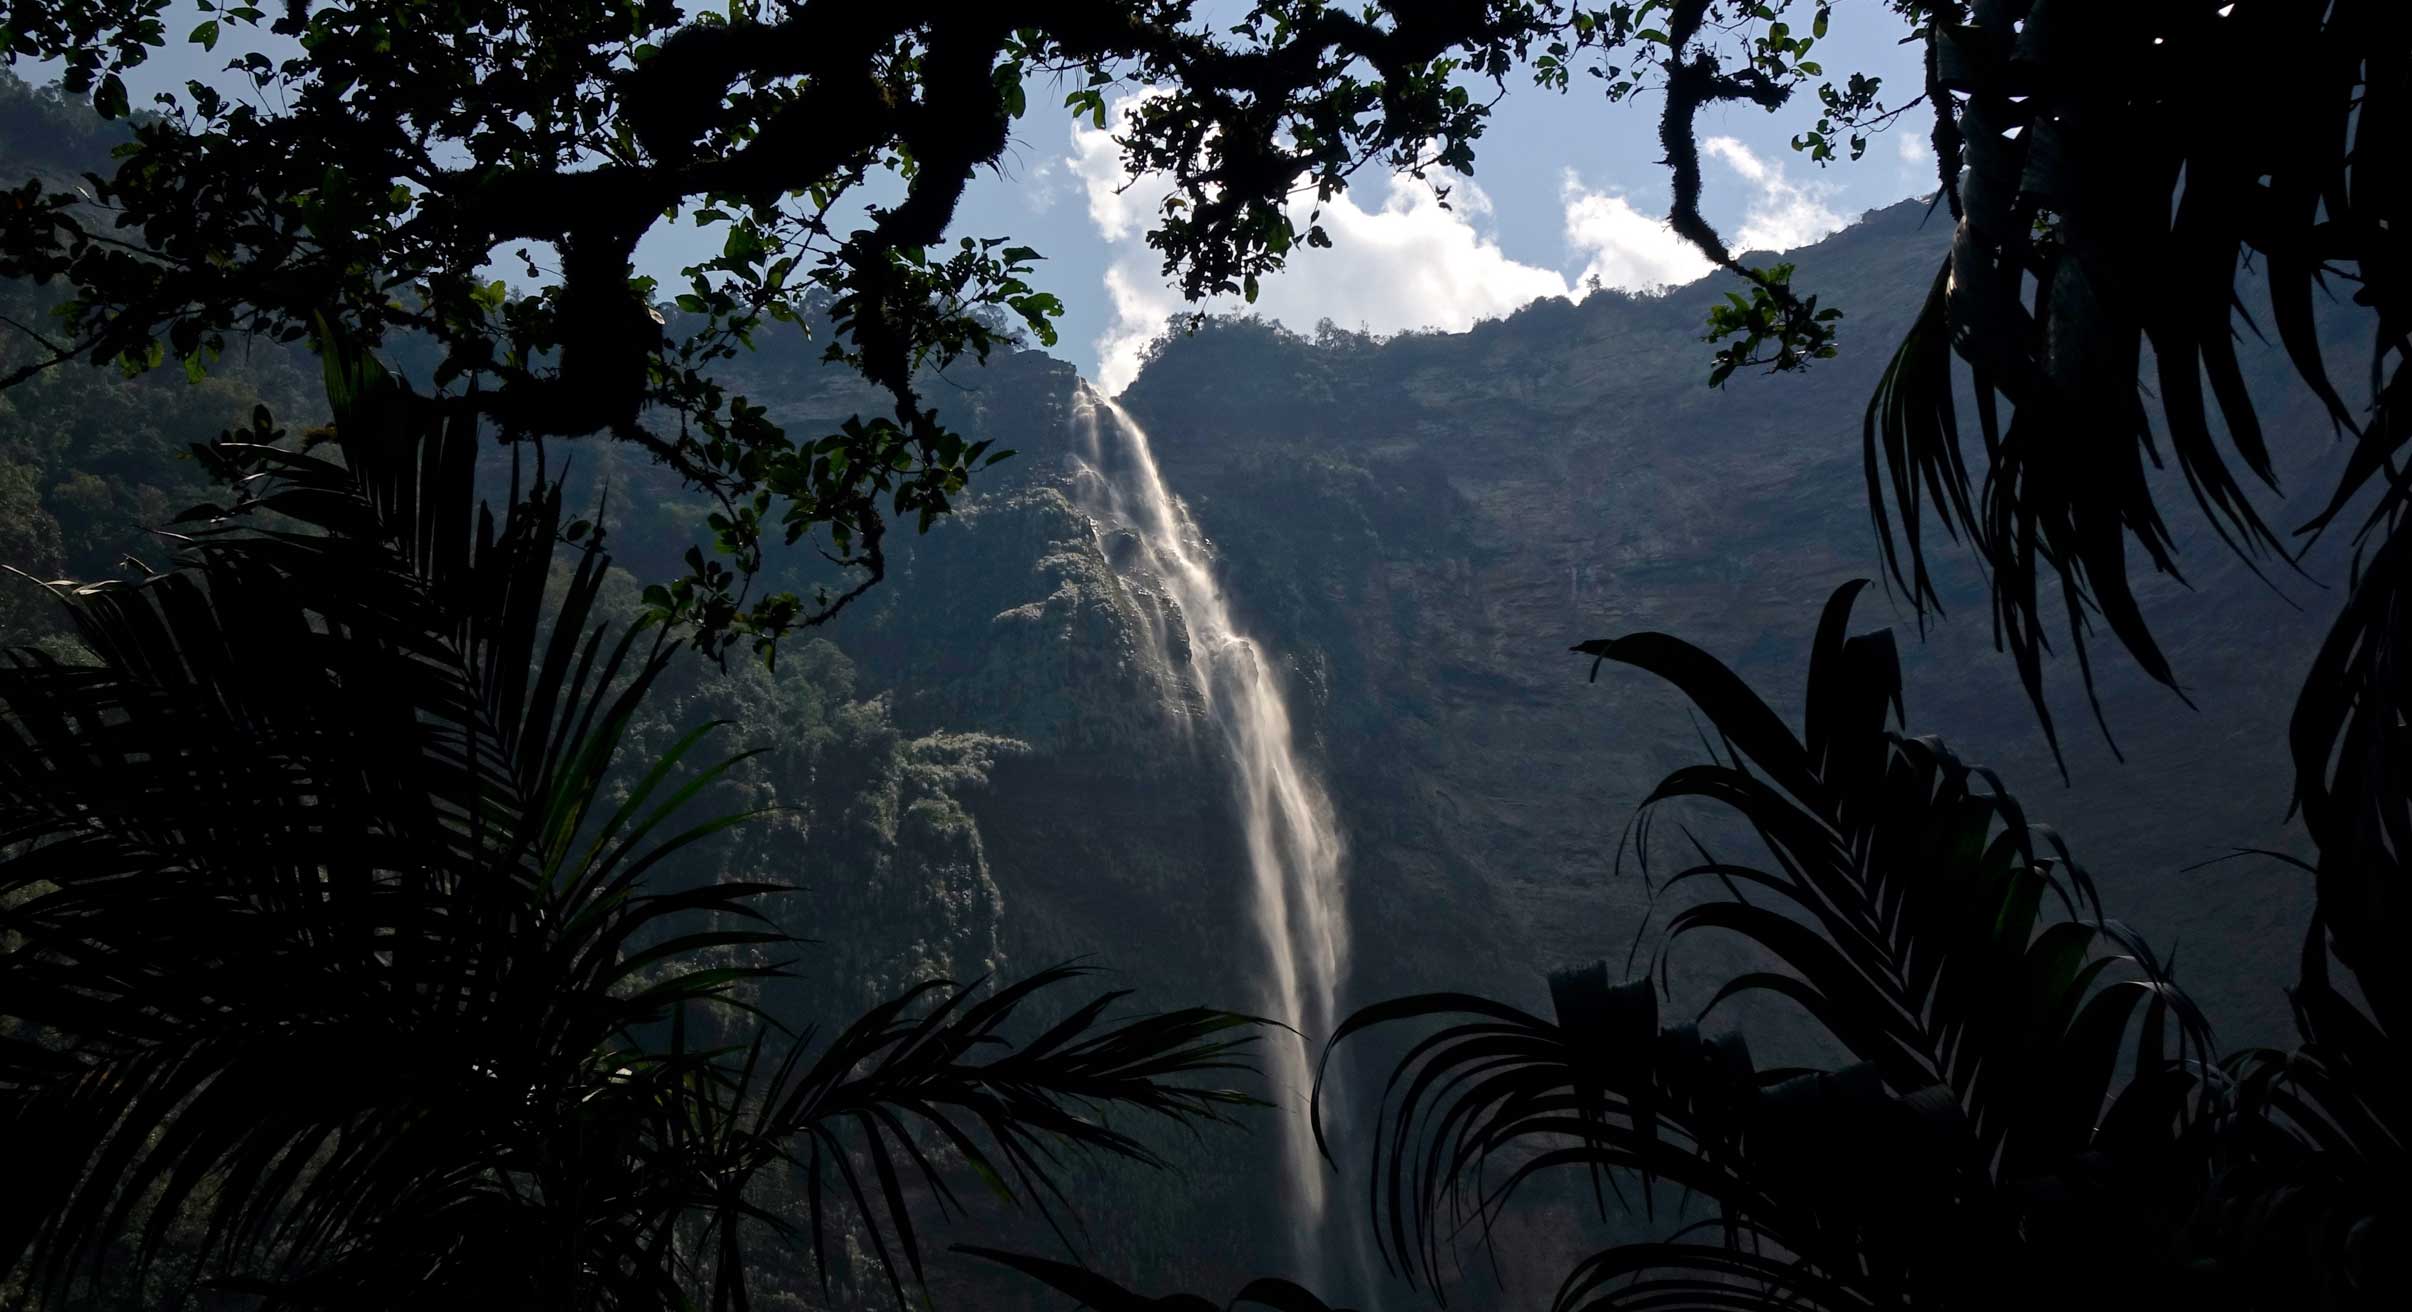 Gotca Falls in Peru